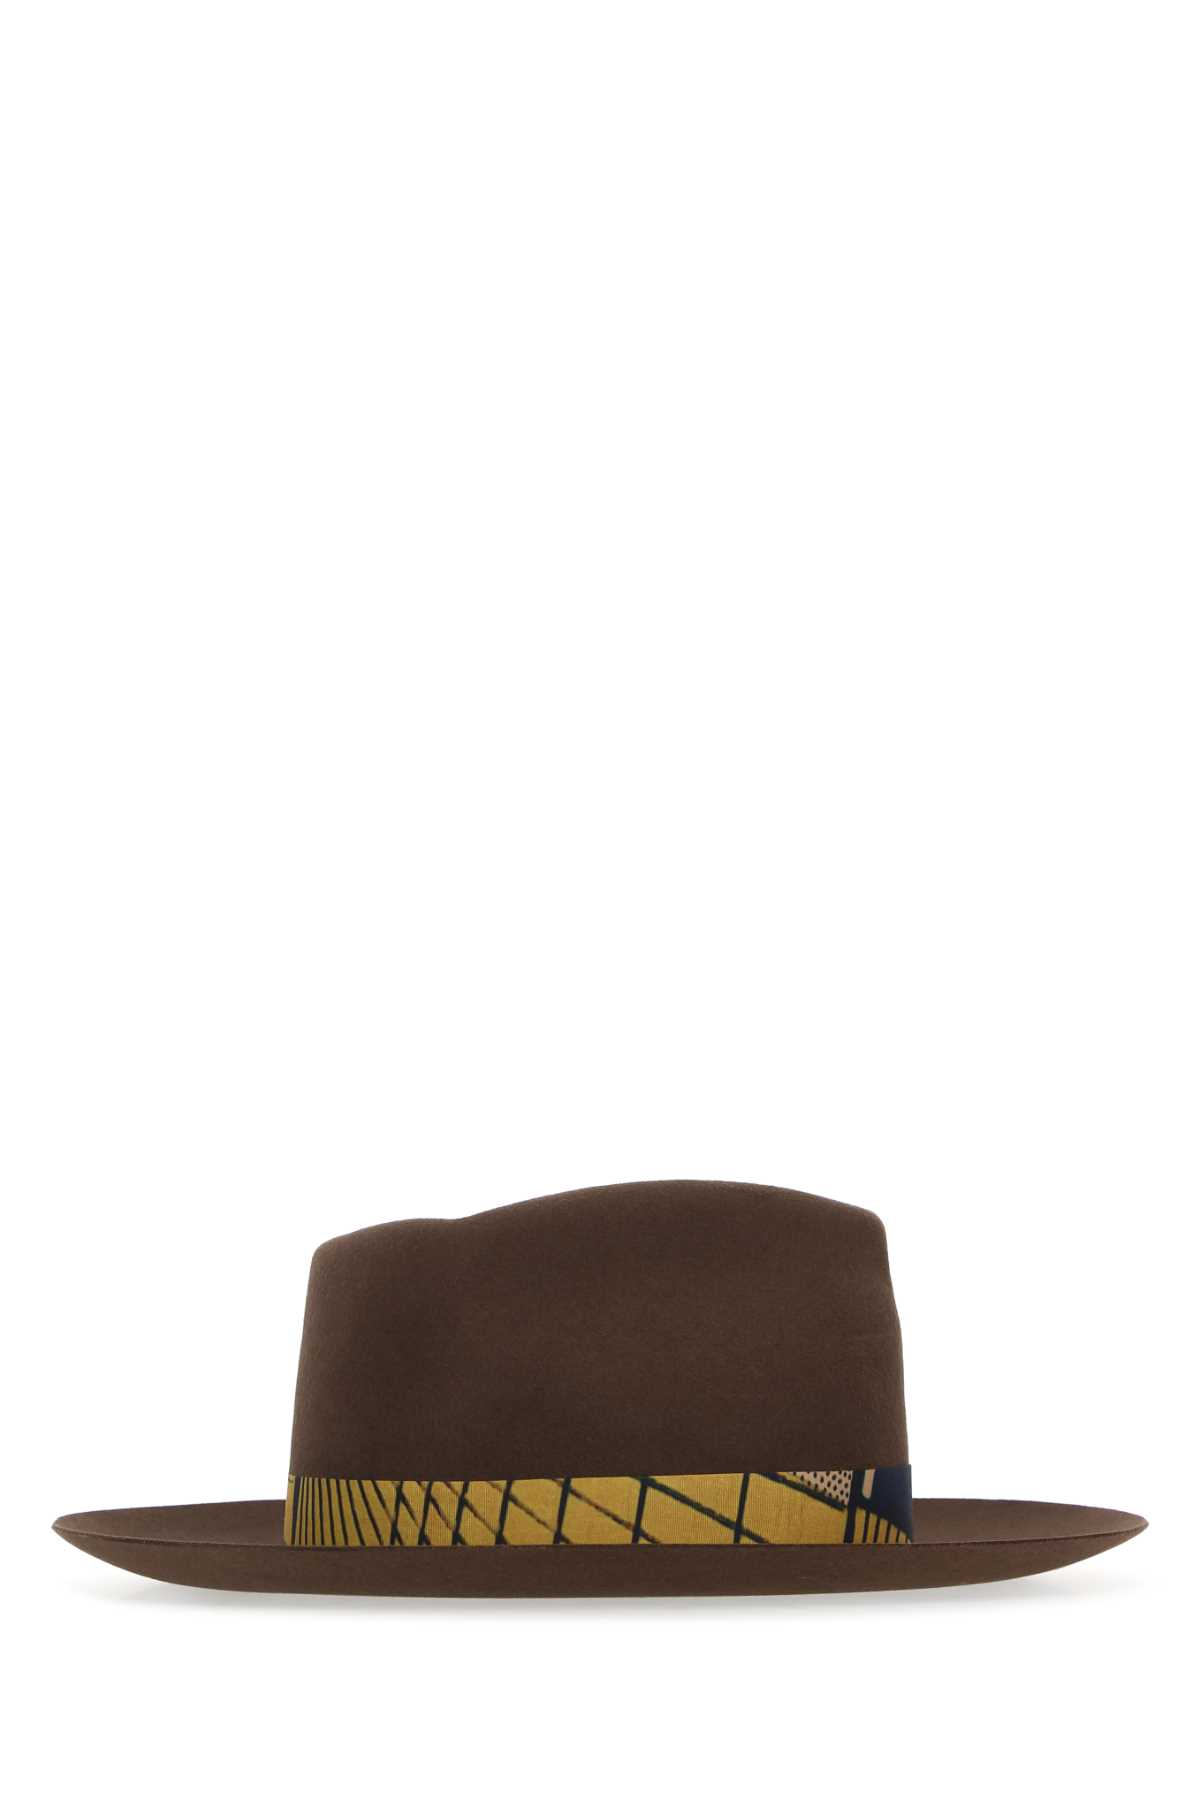 Super Duper Hats Brown Felt Bouganville Hat In Terra